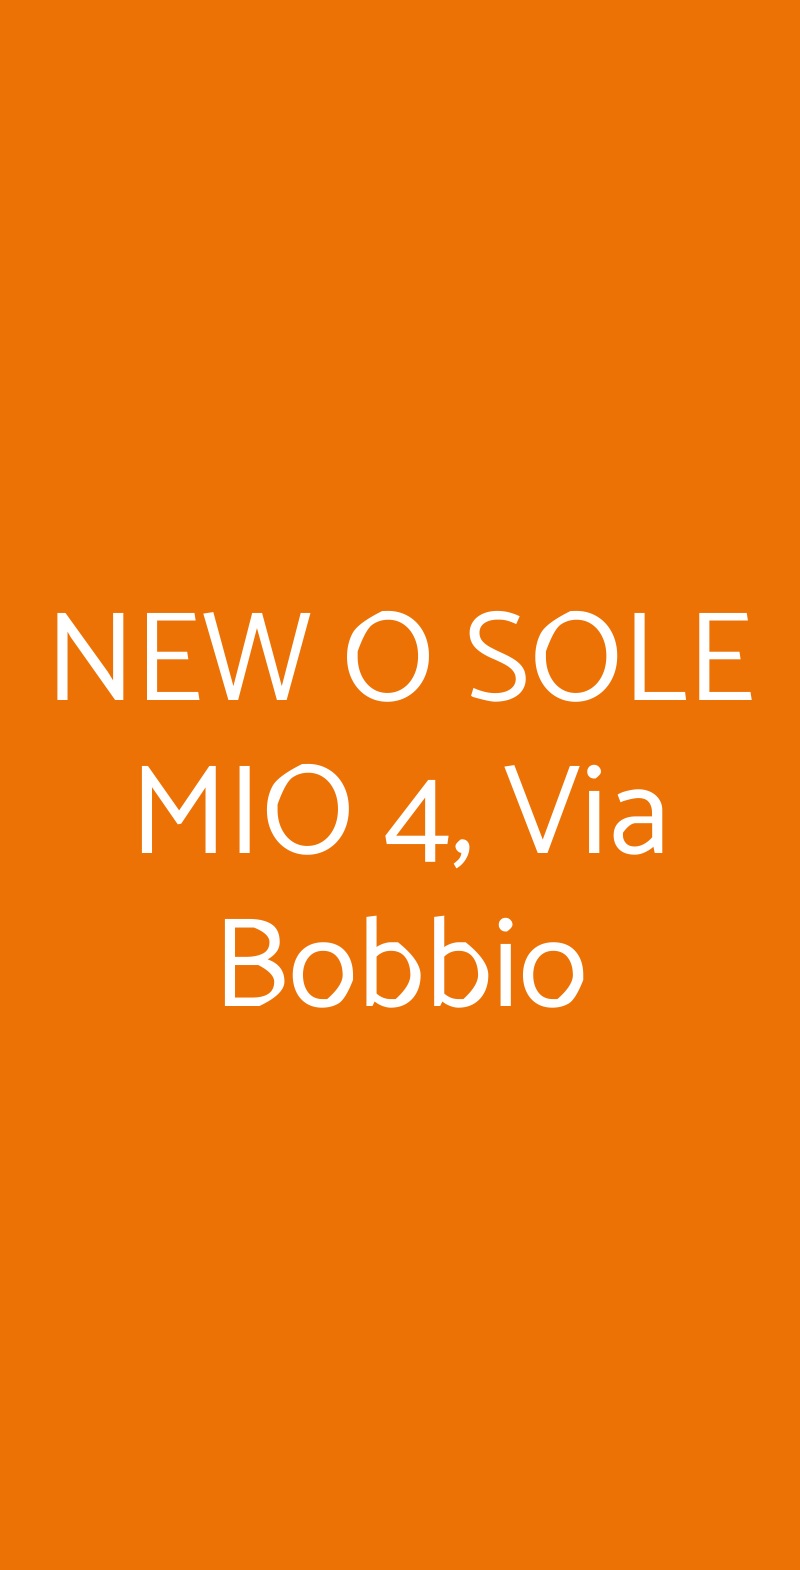 NEW O SOLE MIO 4, Via Bobbio Genova menù 1 pagina